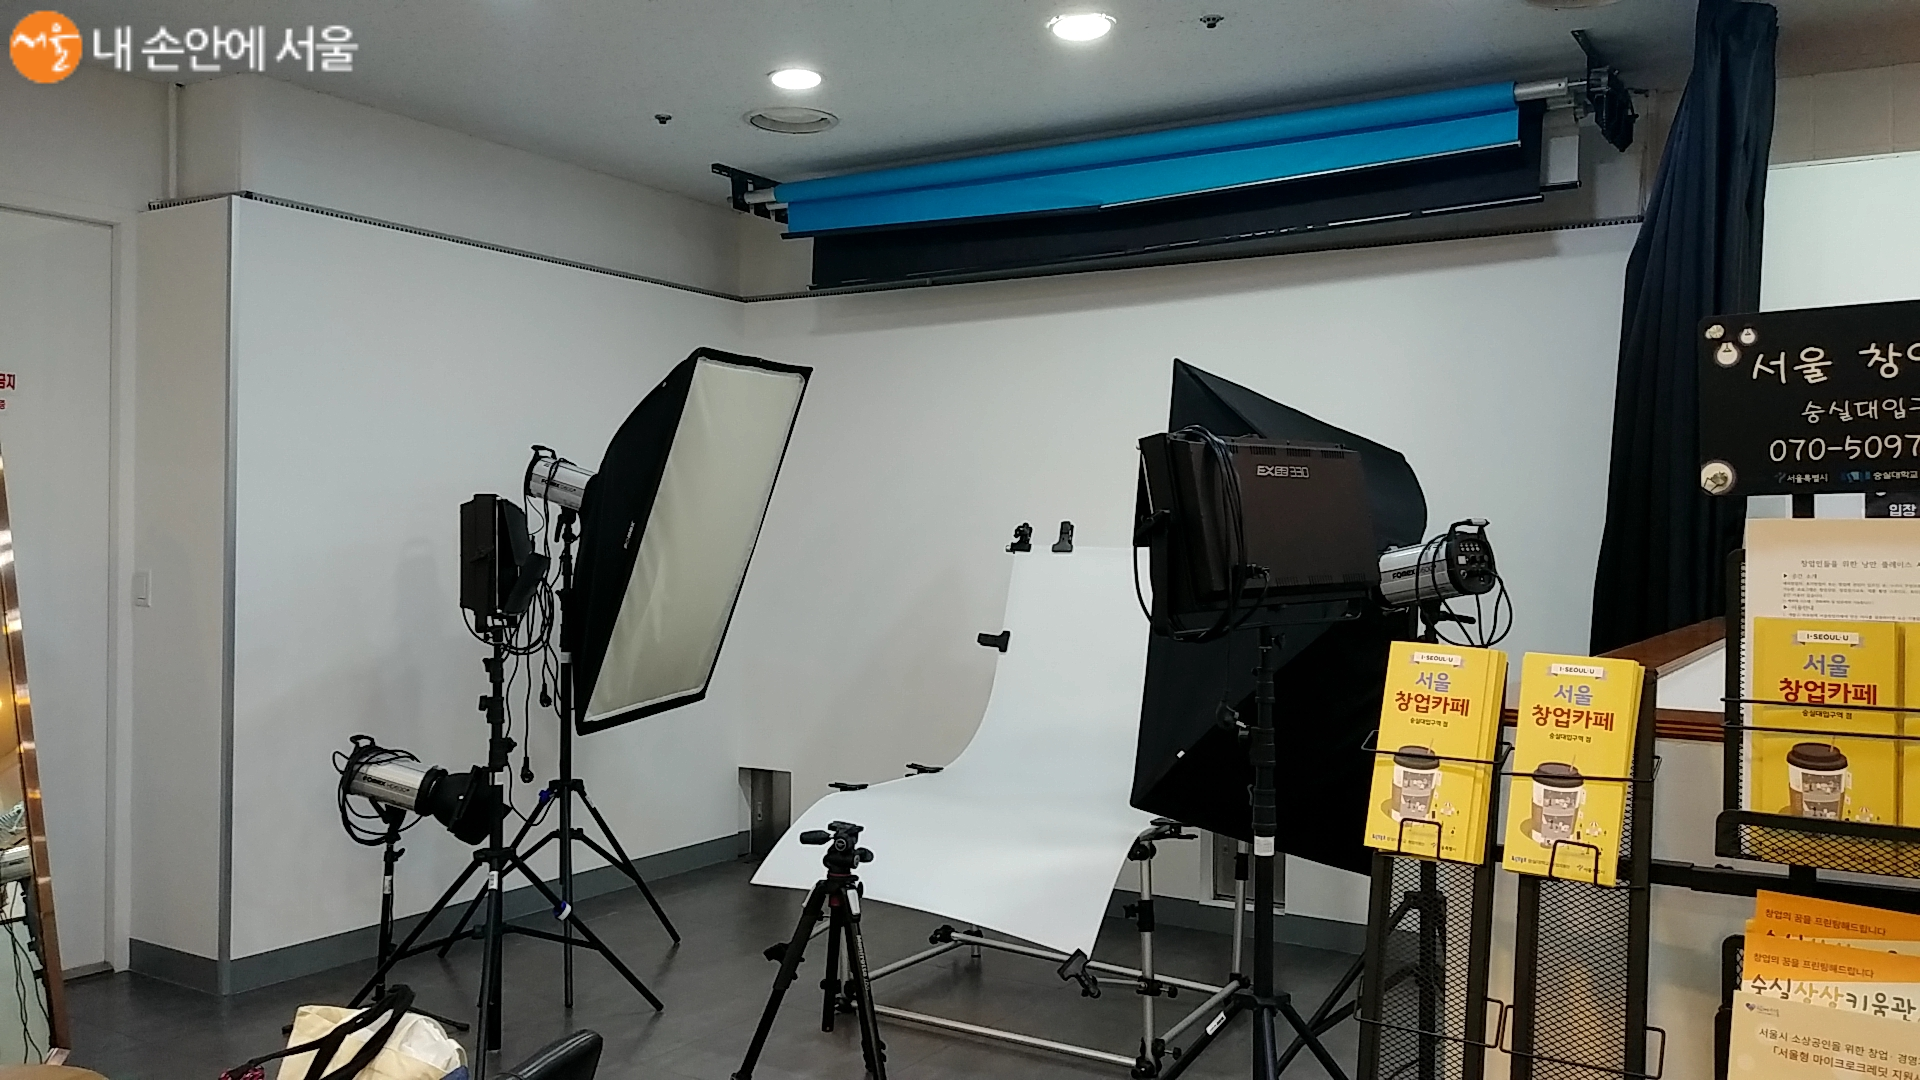 제품 촬영 스튜디오는 카메라 등이 대여되고 스스로 촬영할 수 있다. 